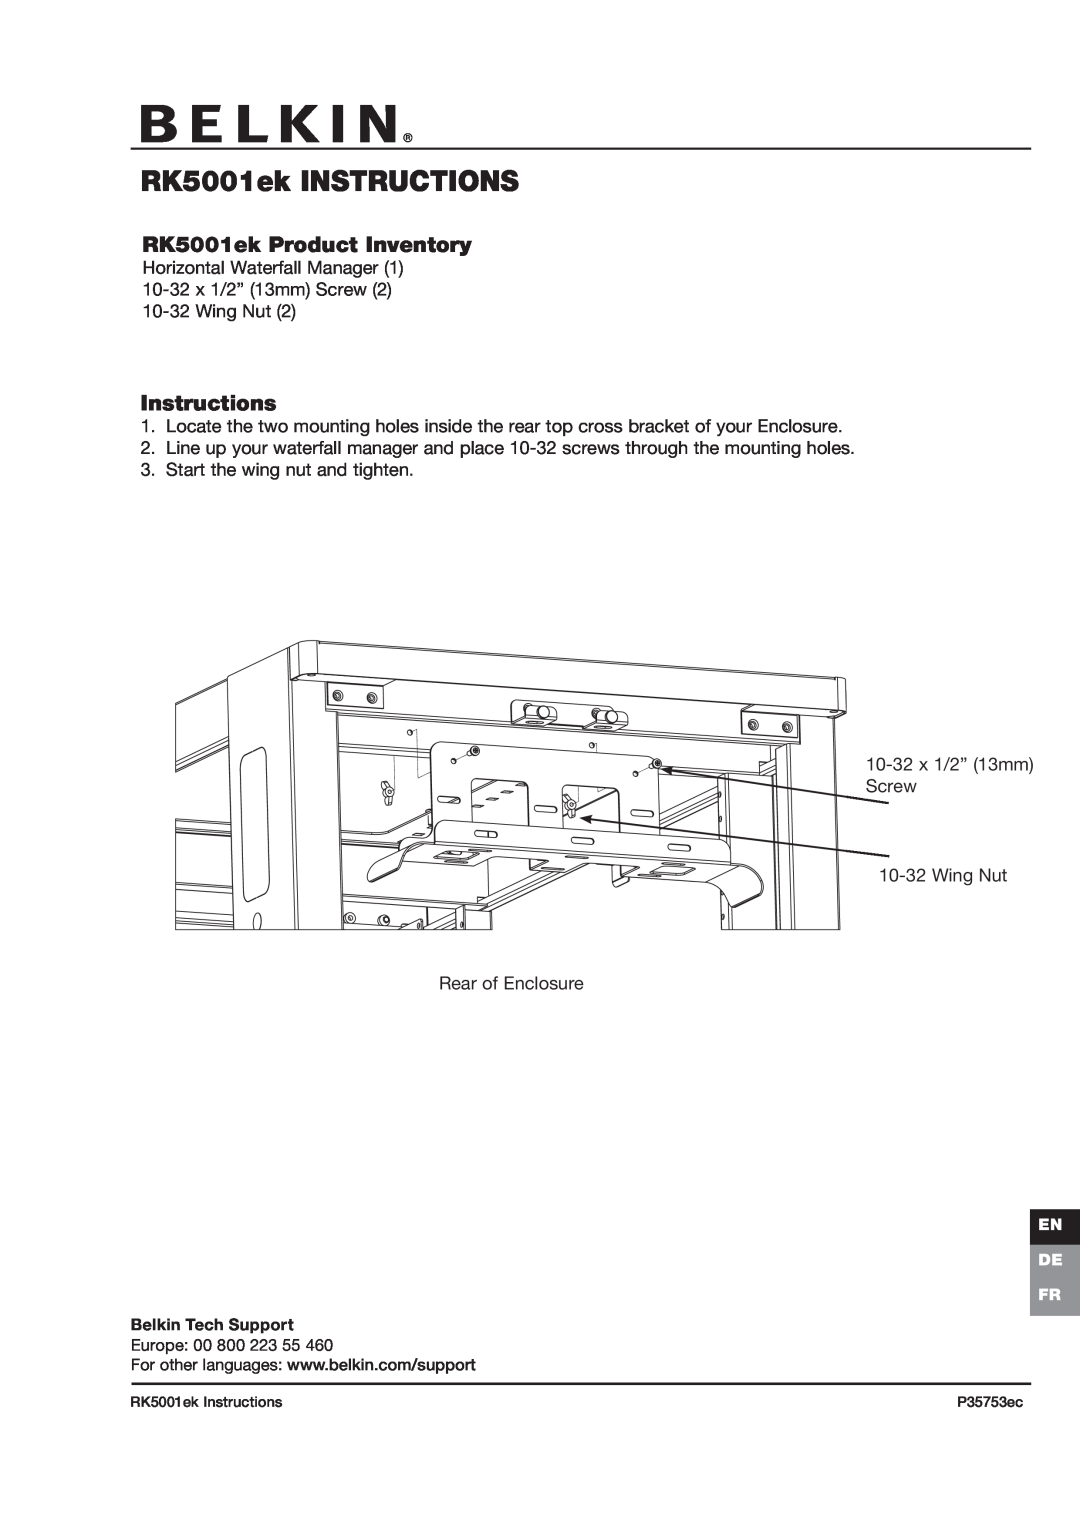 Belkin manual RK5001ek INSTRUCTIONS, RK5001ek Product Inventory, Instructions 